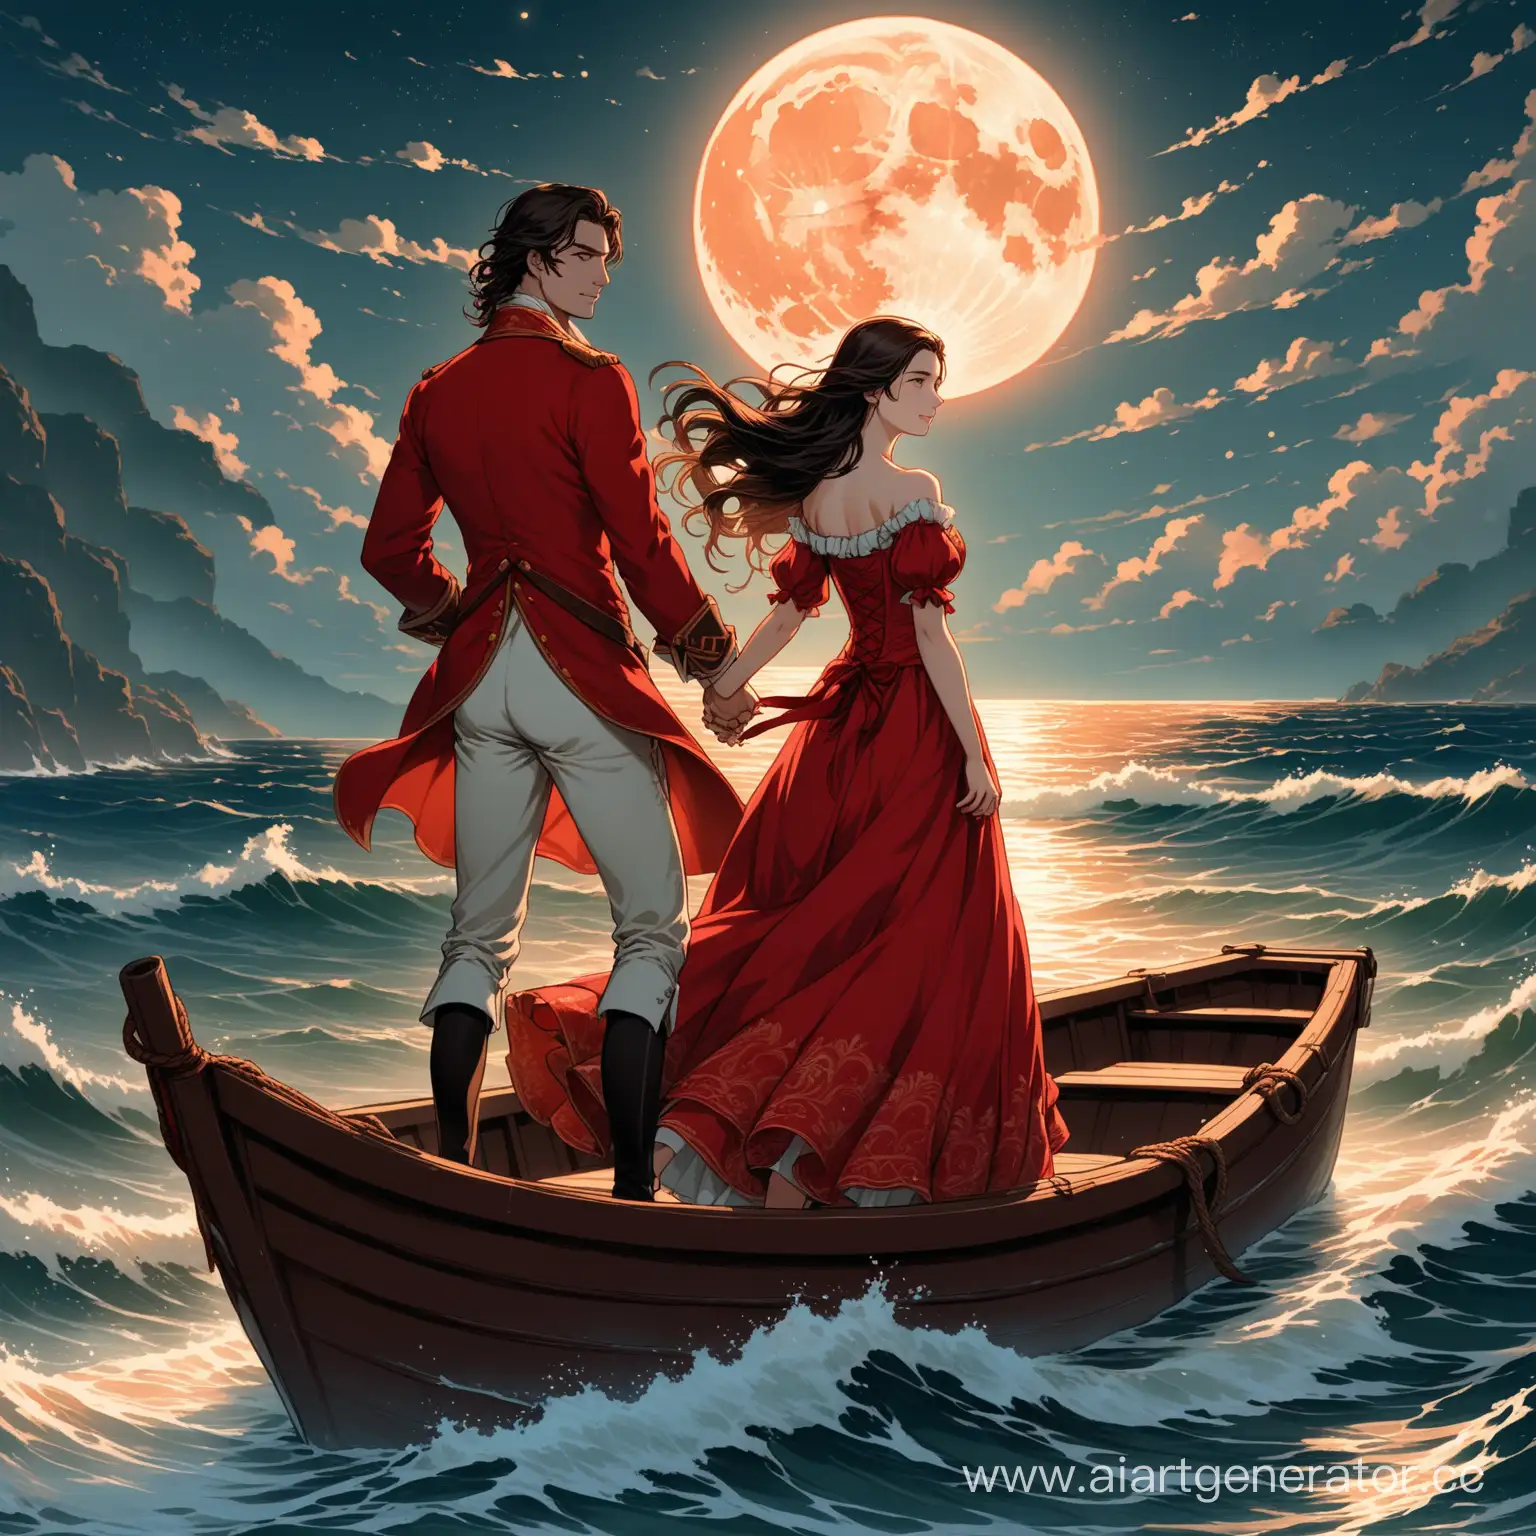 Окрасился месяц багрянцем, где волны бушуют у скал. 18 век, поздний вечер, на морских волнах у берега, отливающих красным, покачивается лодка. Стоя в лодке красивый молодой человек уговаривает красивую девушку покататься с ним. Лица хорошо прорисованы.